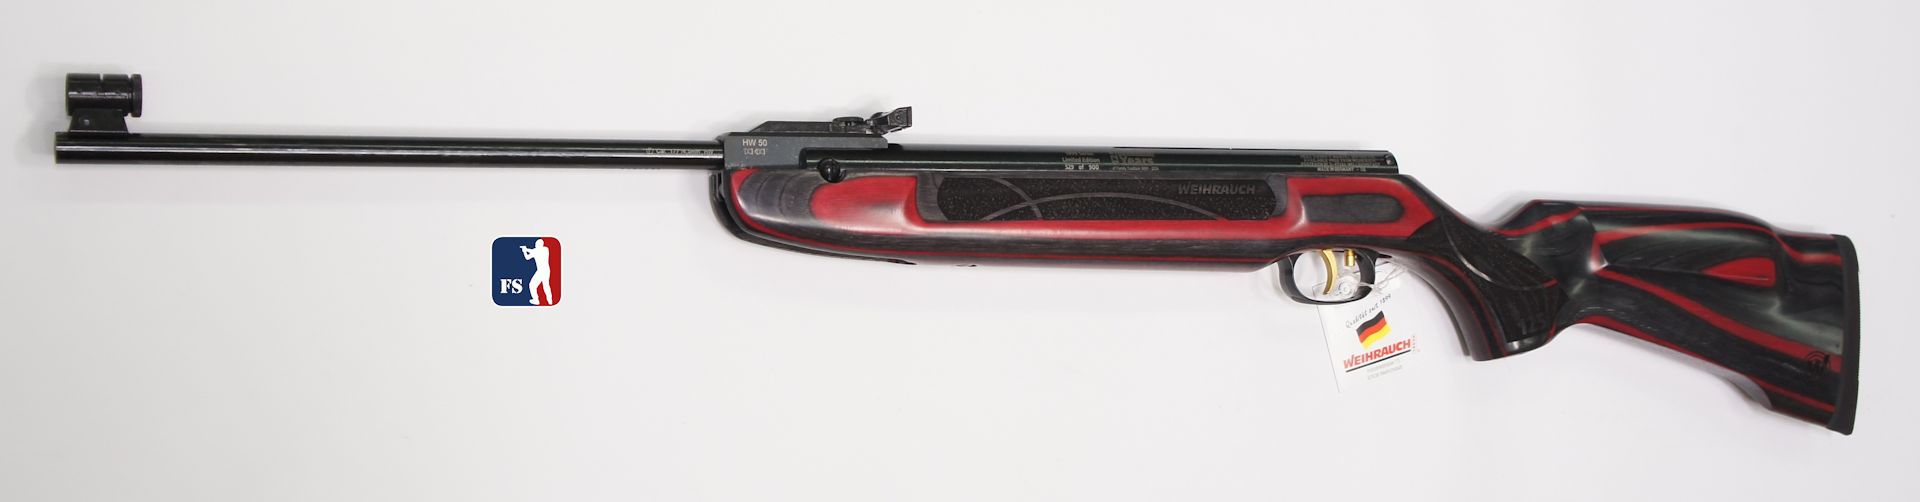 Jubilumsmodell 125 Jahre Weihrauch, Luftgewehr HW 50 S, Kaliber 4komma5 mm